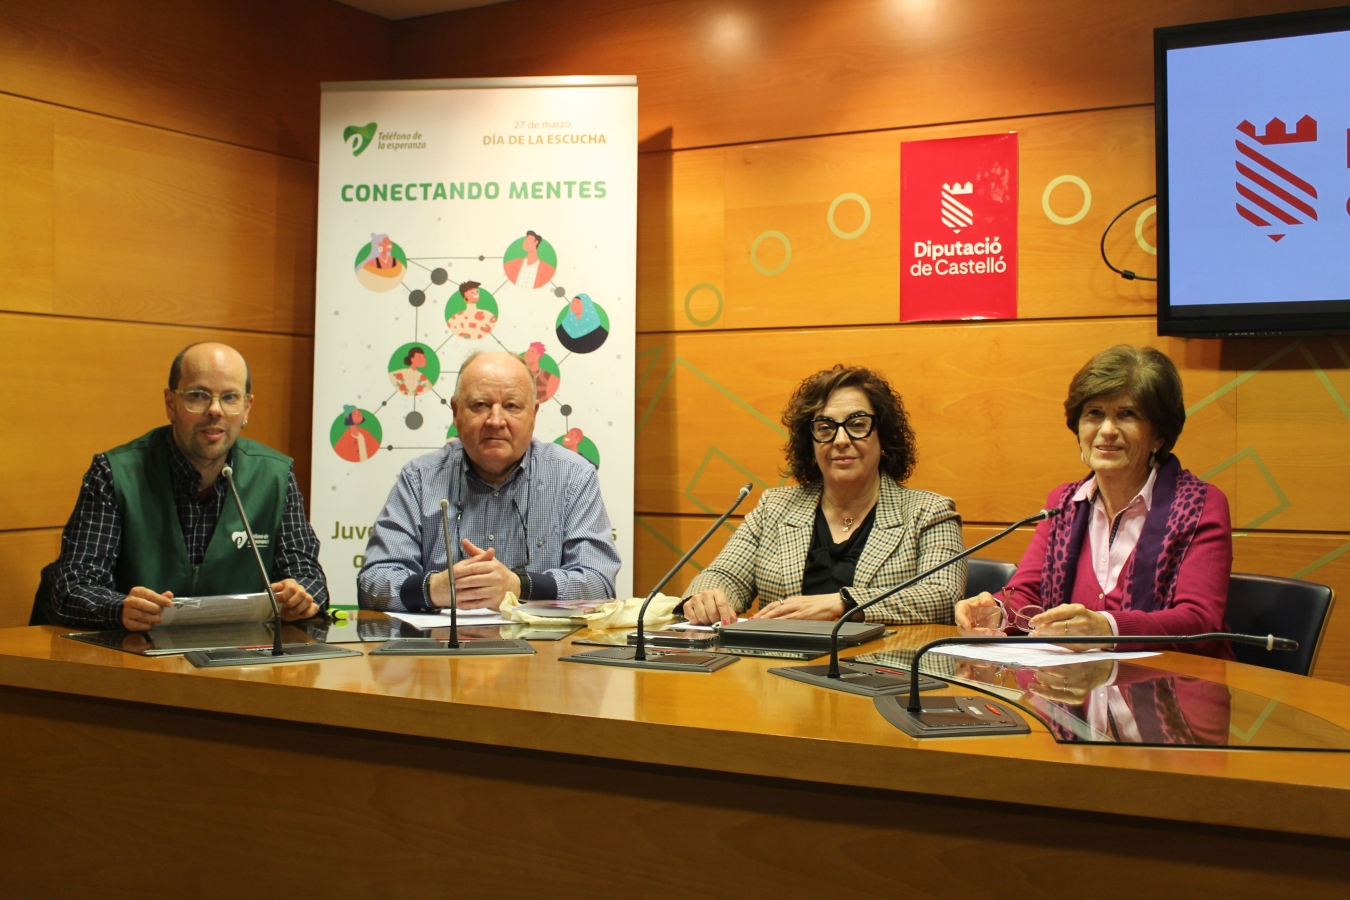 La Diputación de Castellón colabora con la Asociación el Teléfono de la Esperanza y acoge la presentación del Chat Esperanza, un servicio de atención psicológica